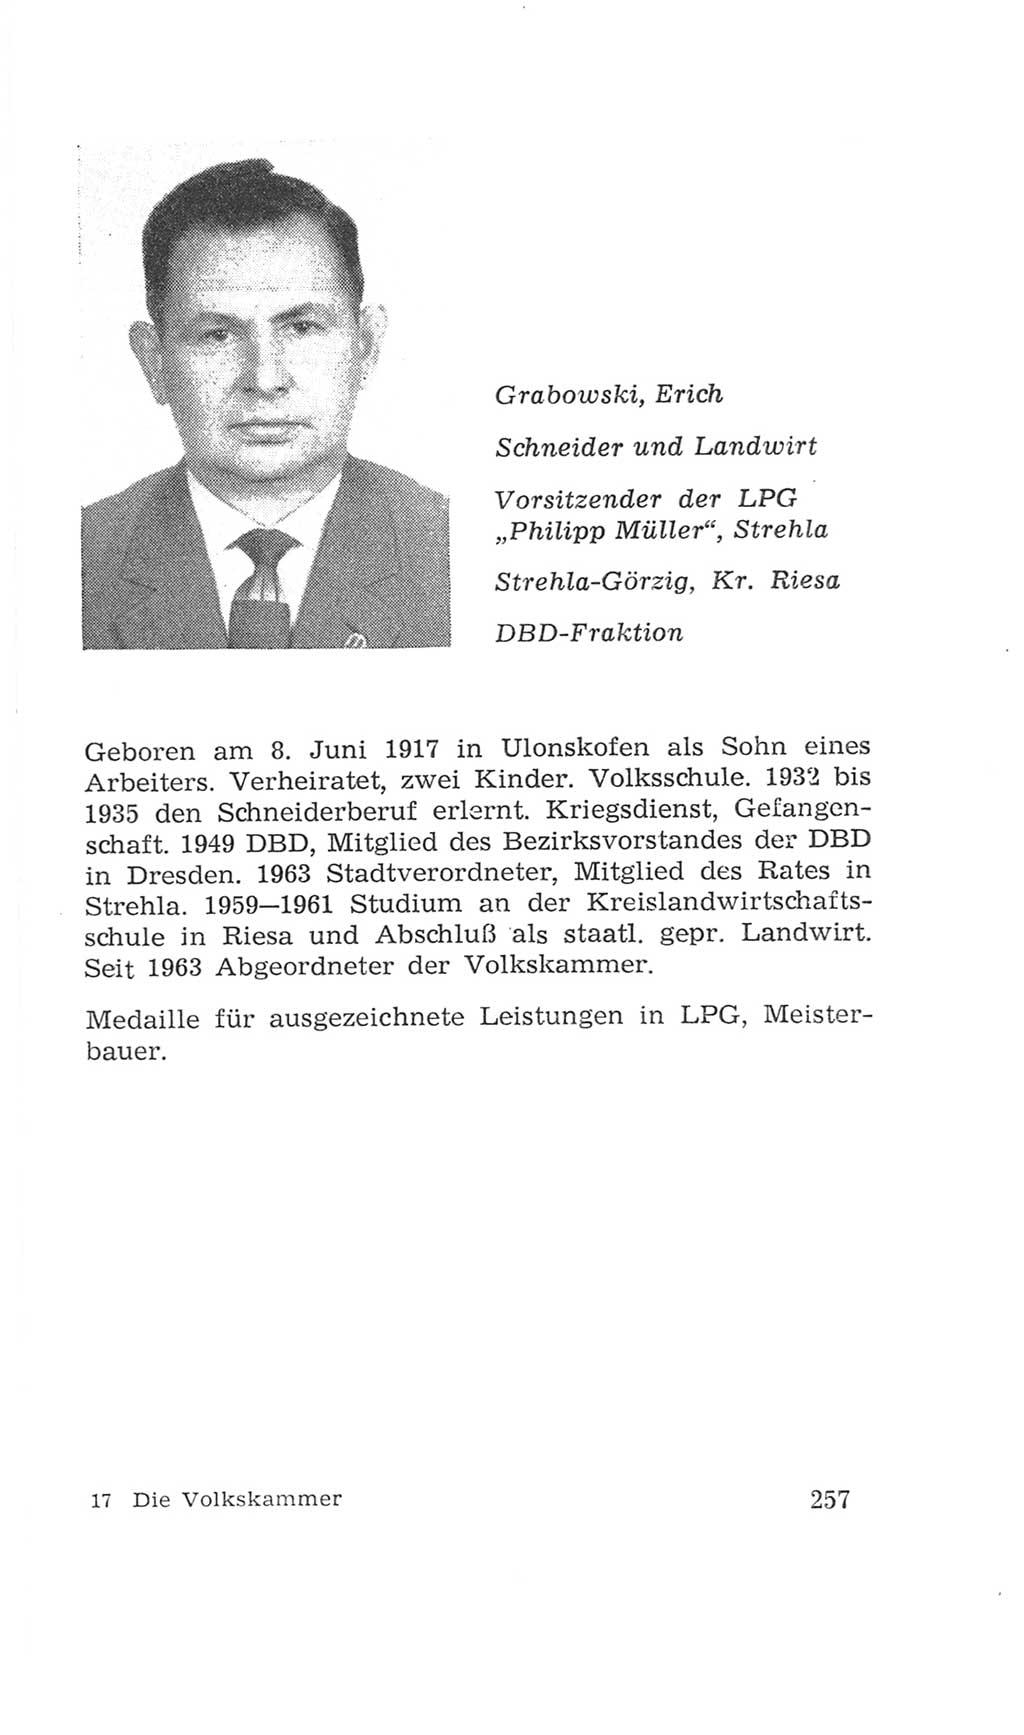 Volkskammer (VK) der Deutschen Demokratischen Republik (DDR), 4. Wahlperiode 1963-1967, Seite 257 (VK. DDR 4. WP. 1963-1967, S. 257)